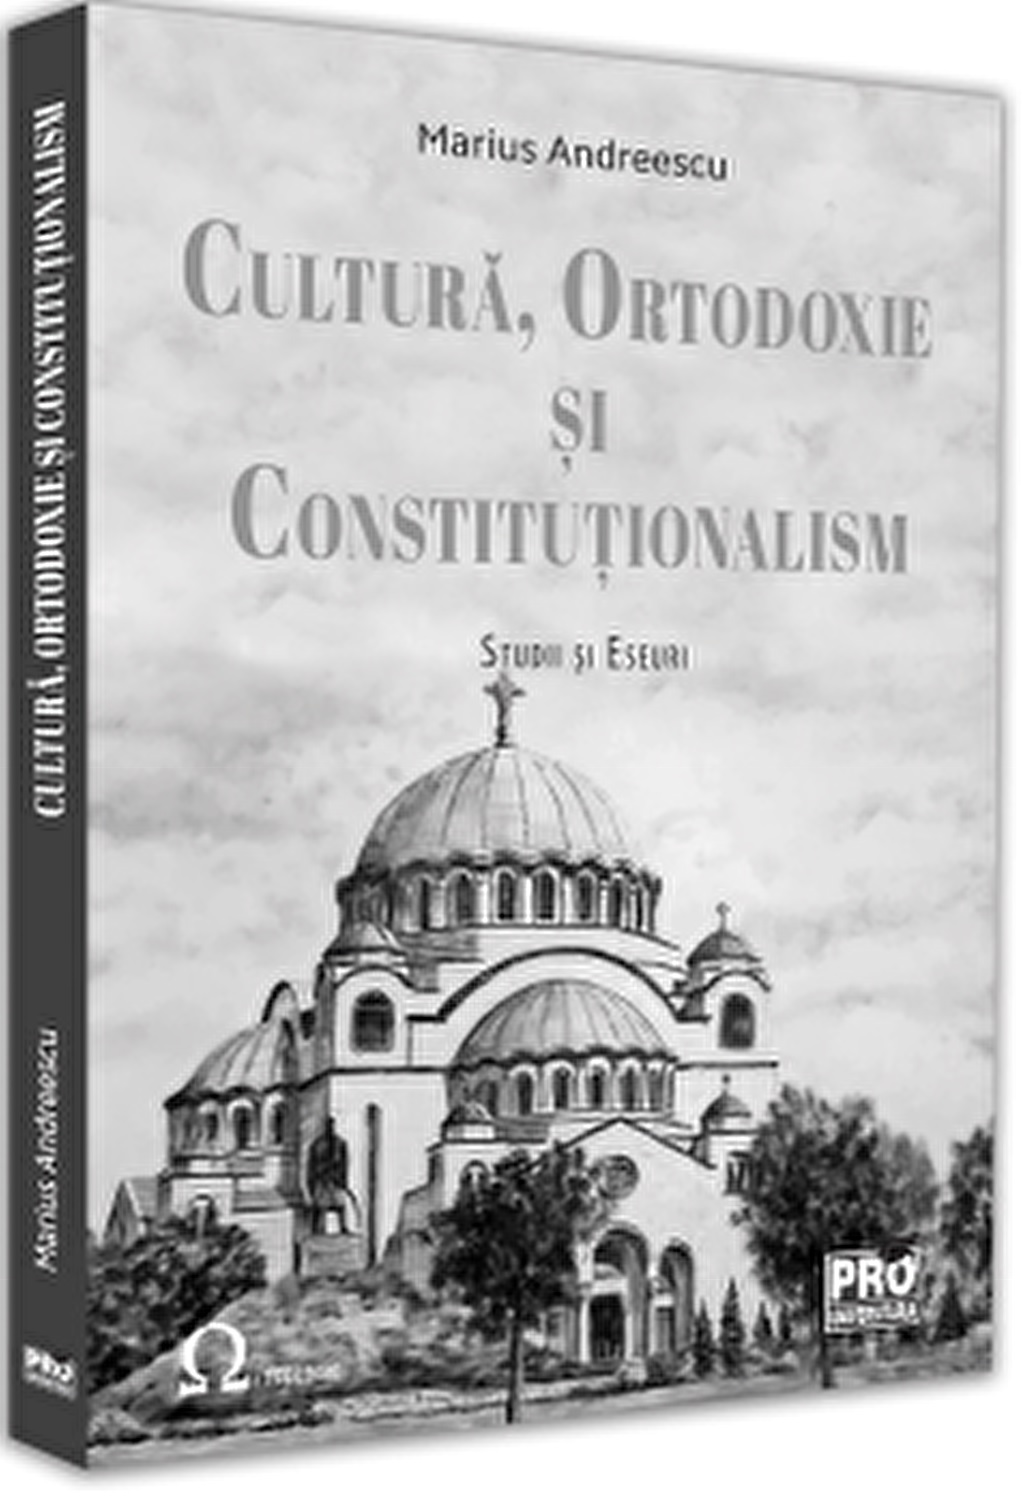 Cultura, ortodoxie si constitutionalism | Marius Andreescu carturesti.ro poza bestsellers.ro